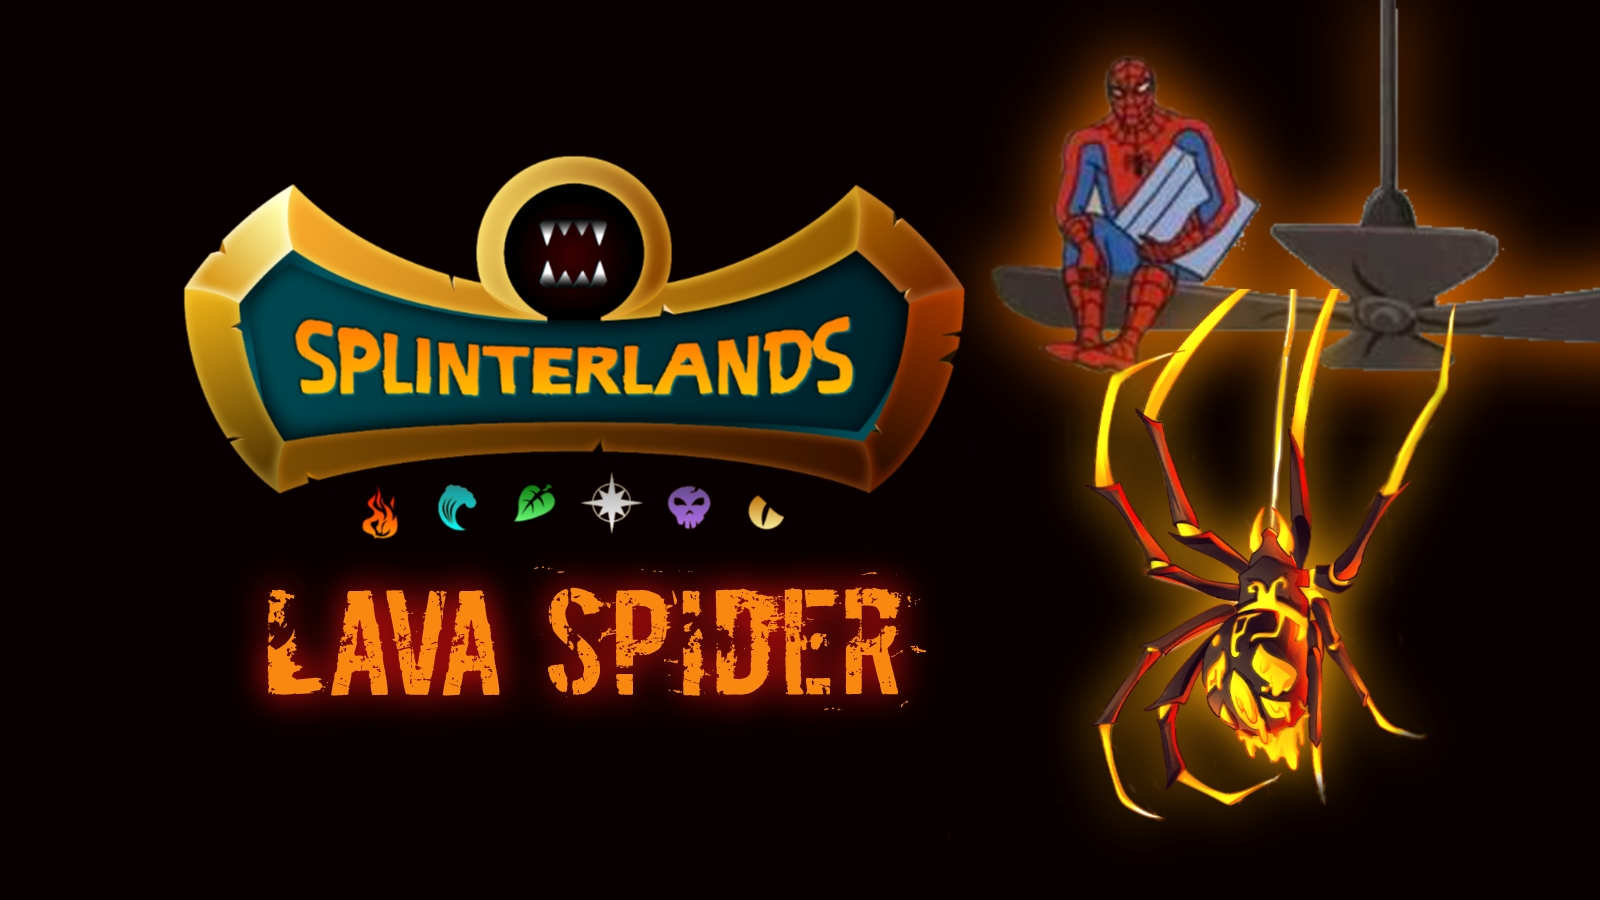 lava spider wallpaper.jpg